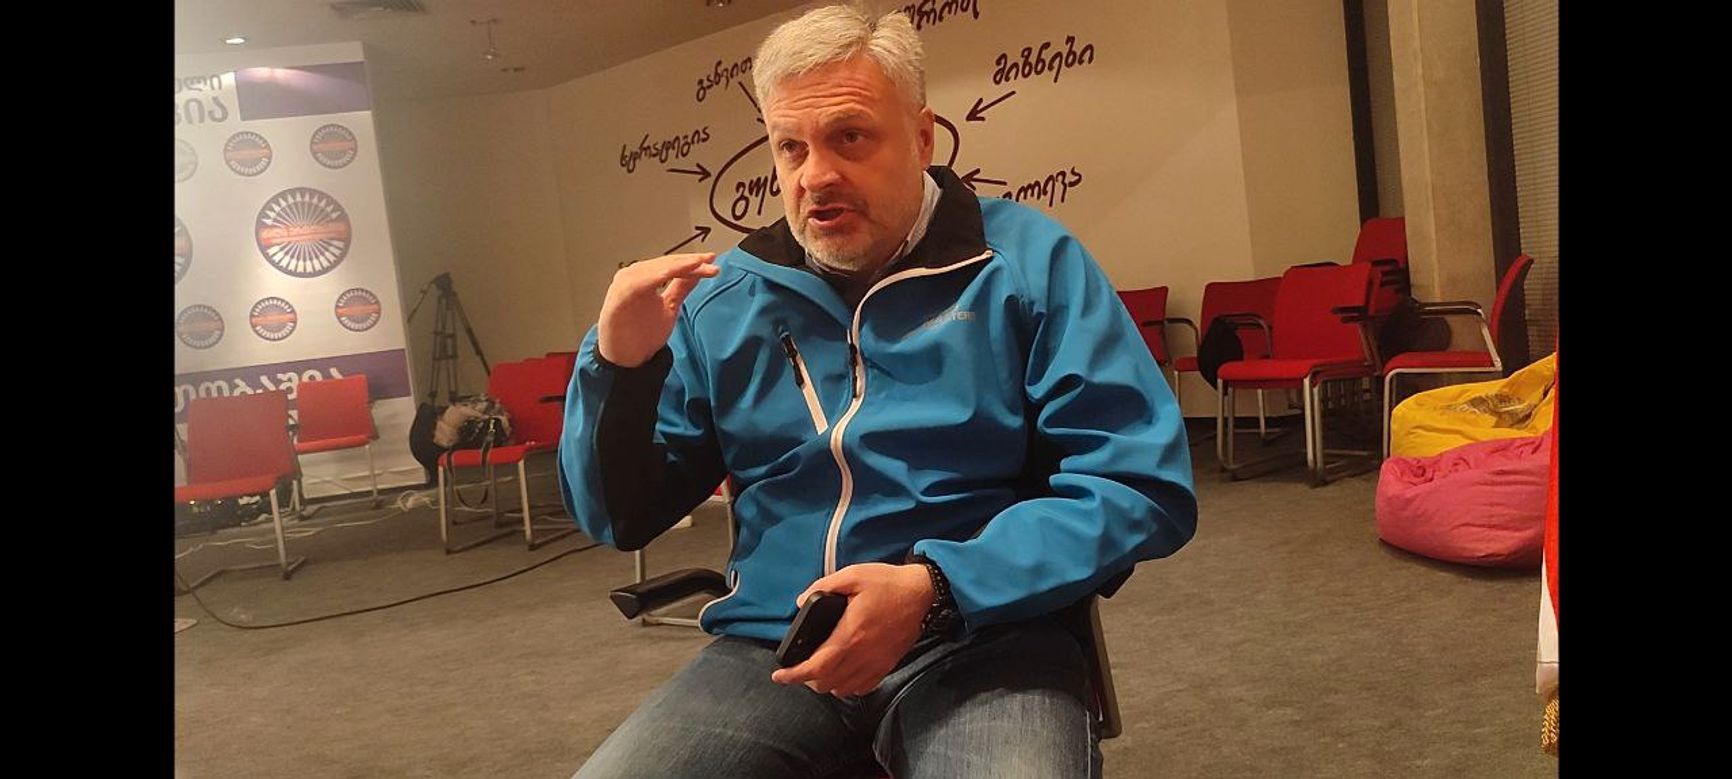 Георгий Барамидзе - один из лидеров ЕНД, занимавший в годы президентства Саакашвили различные посты в правительстве 